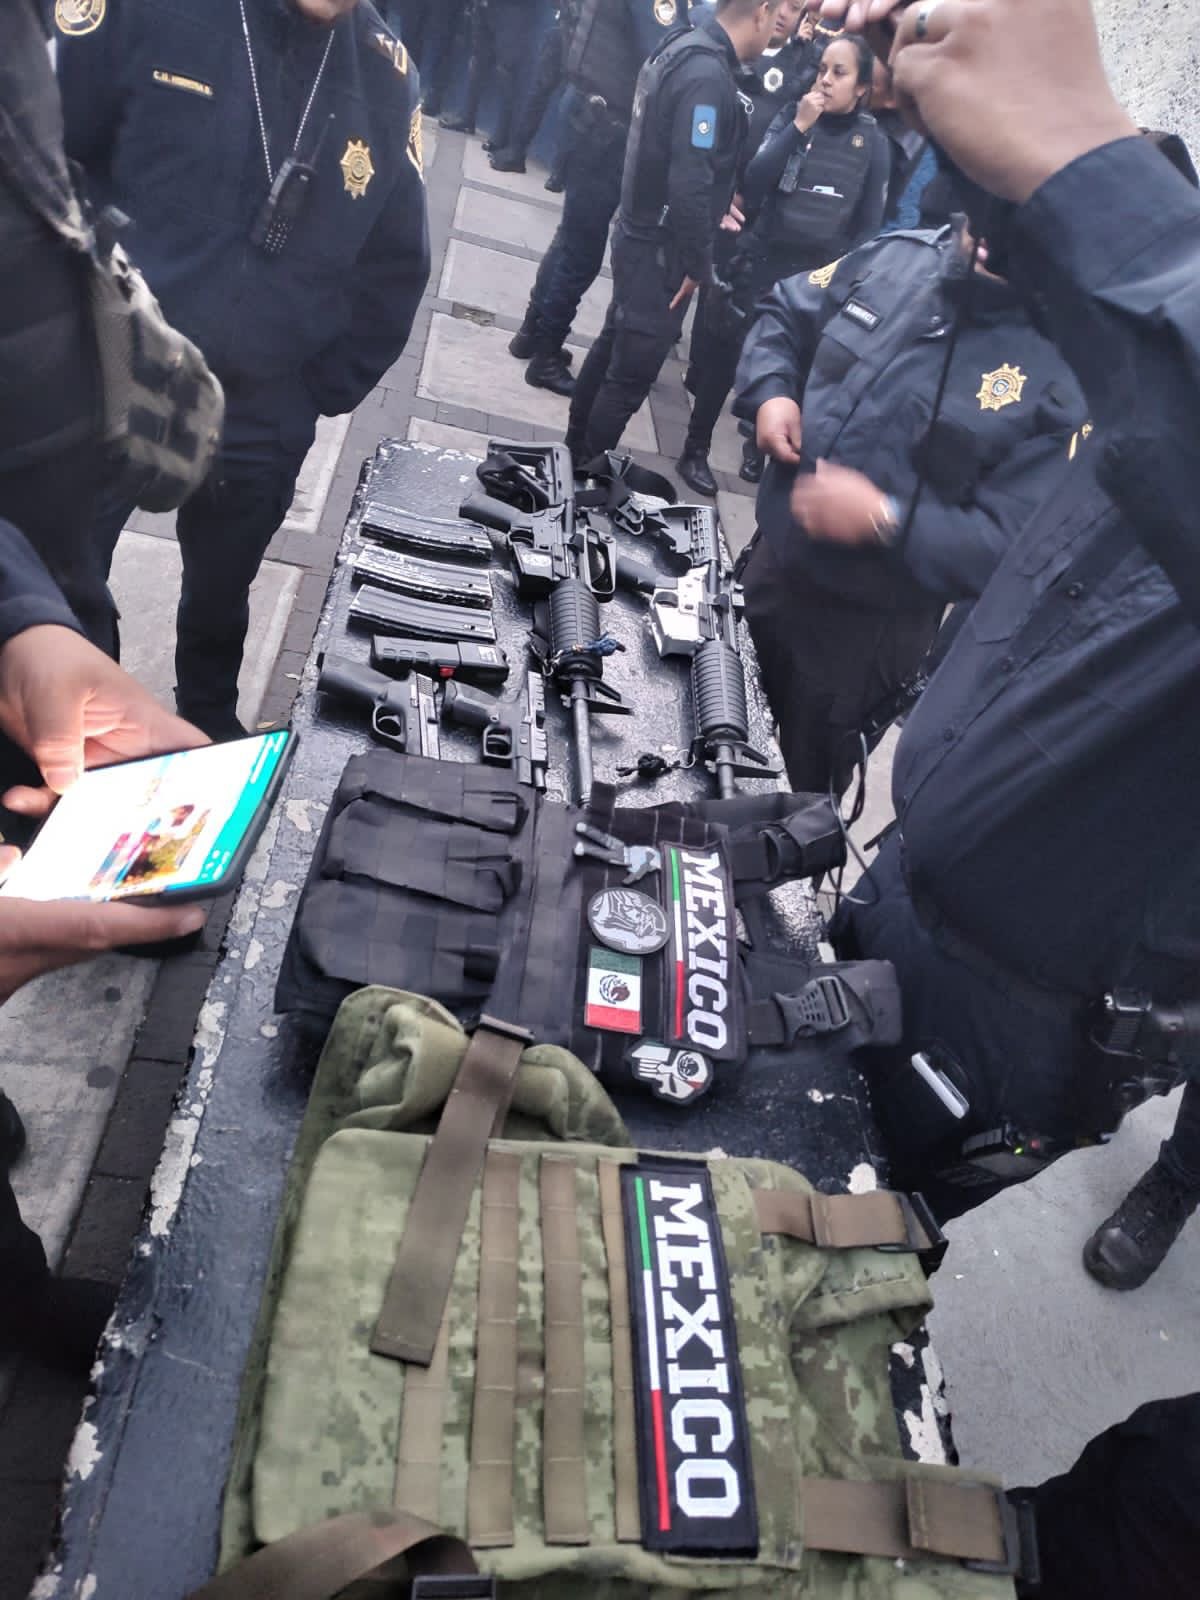 Los chalecos y equipo asegurado contenía insignias del CJNG
(Foto: Twitter / @AlcaldíaAO)